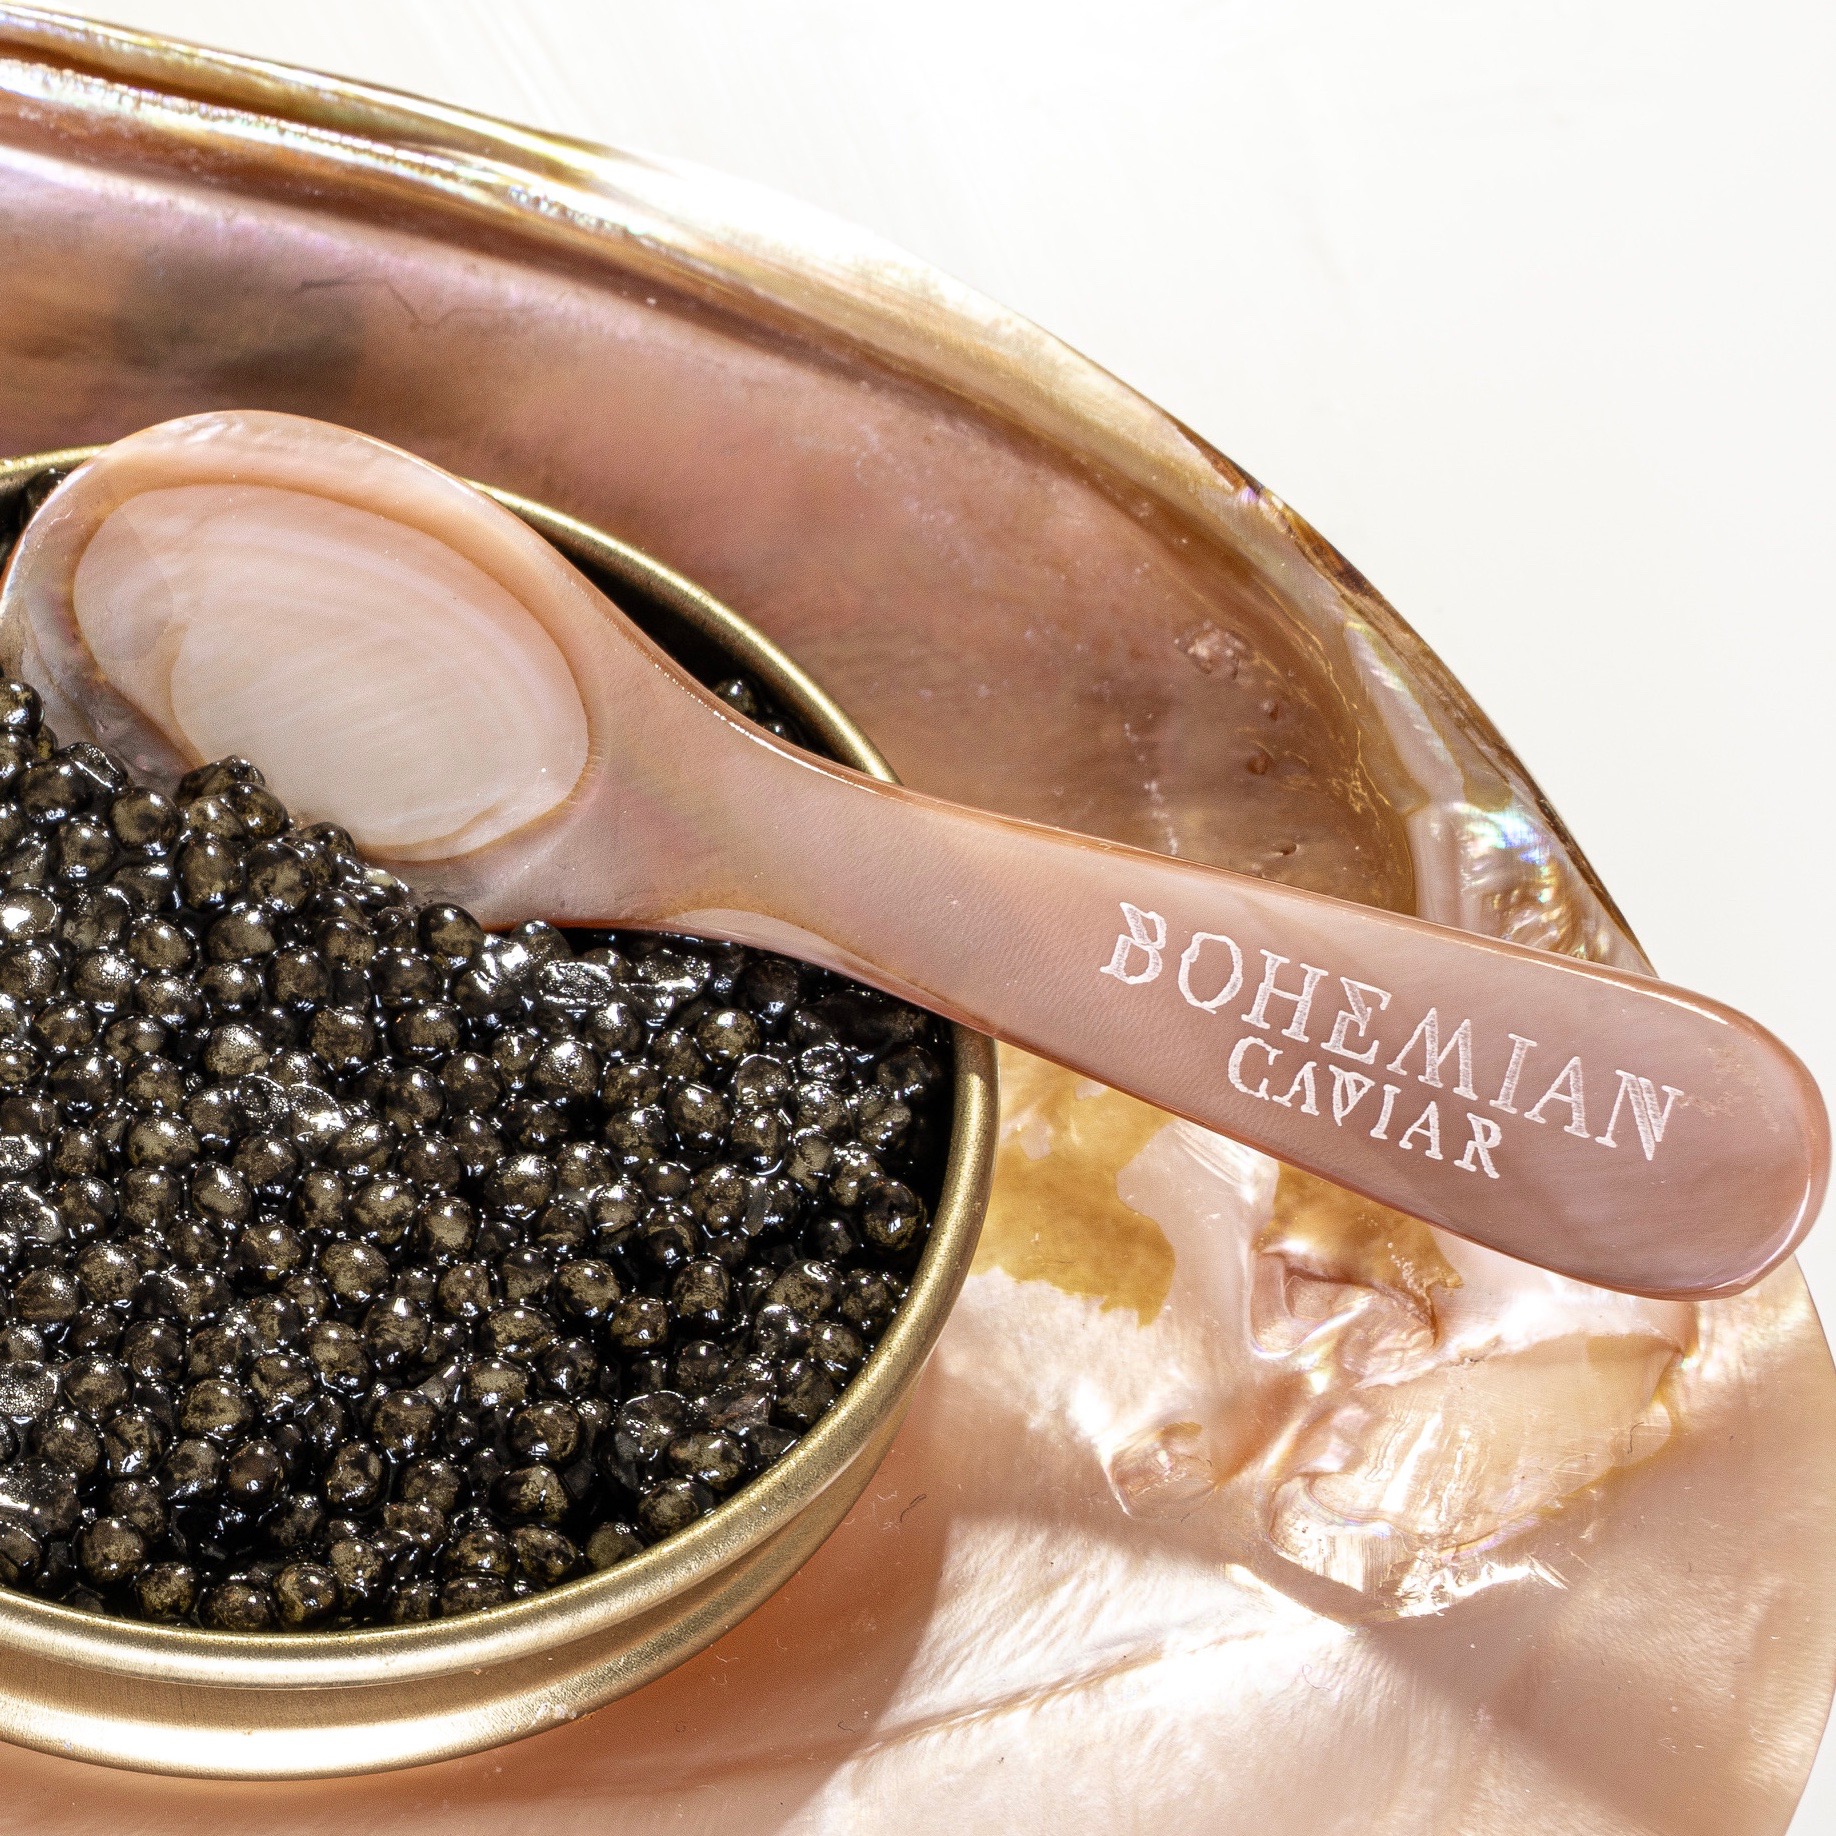 Cuillère en nacre rose naturel – Bohemian Caviar